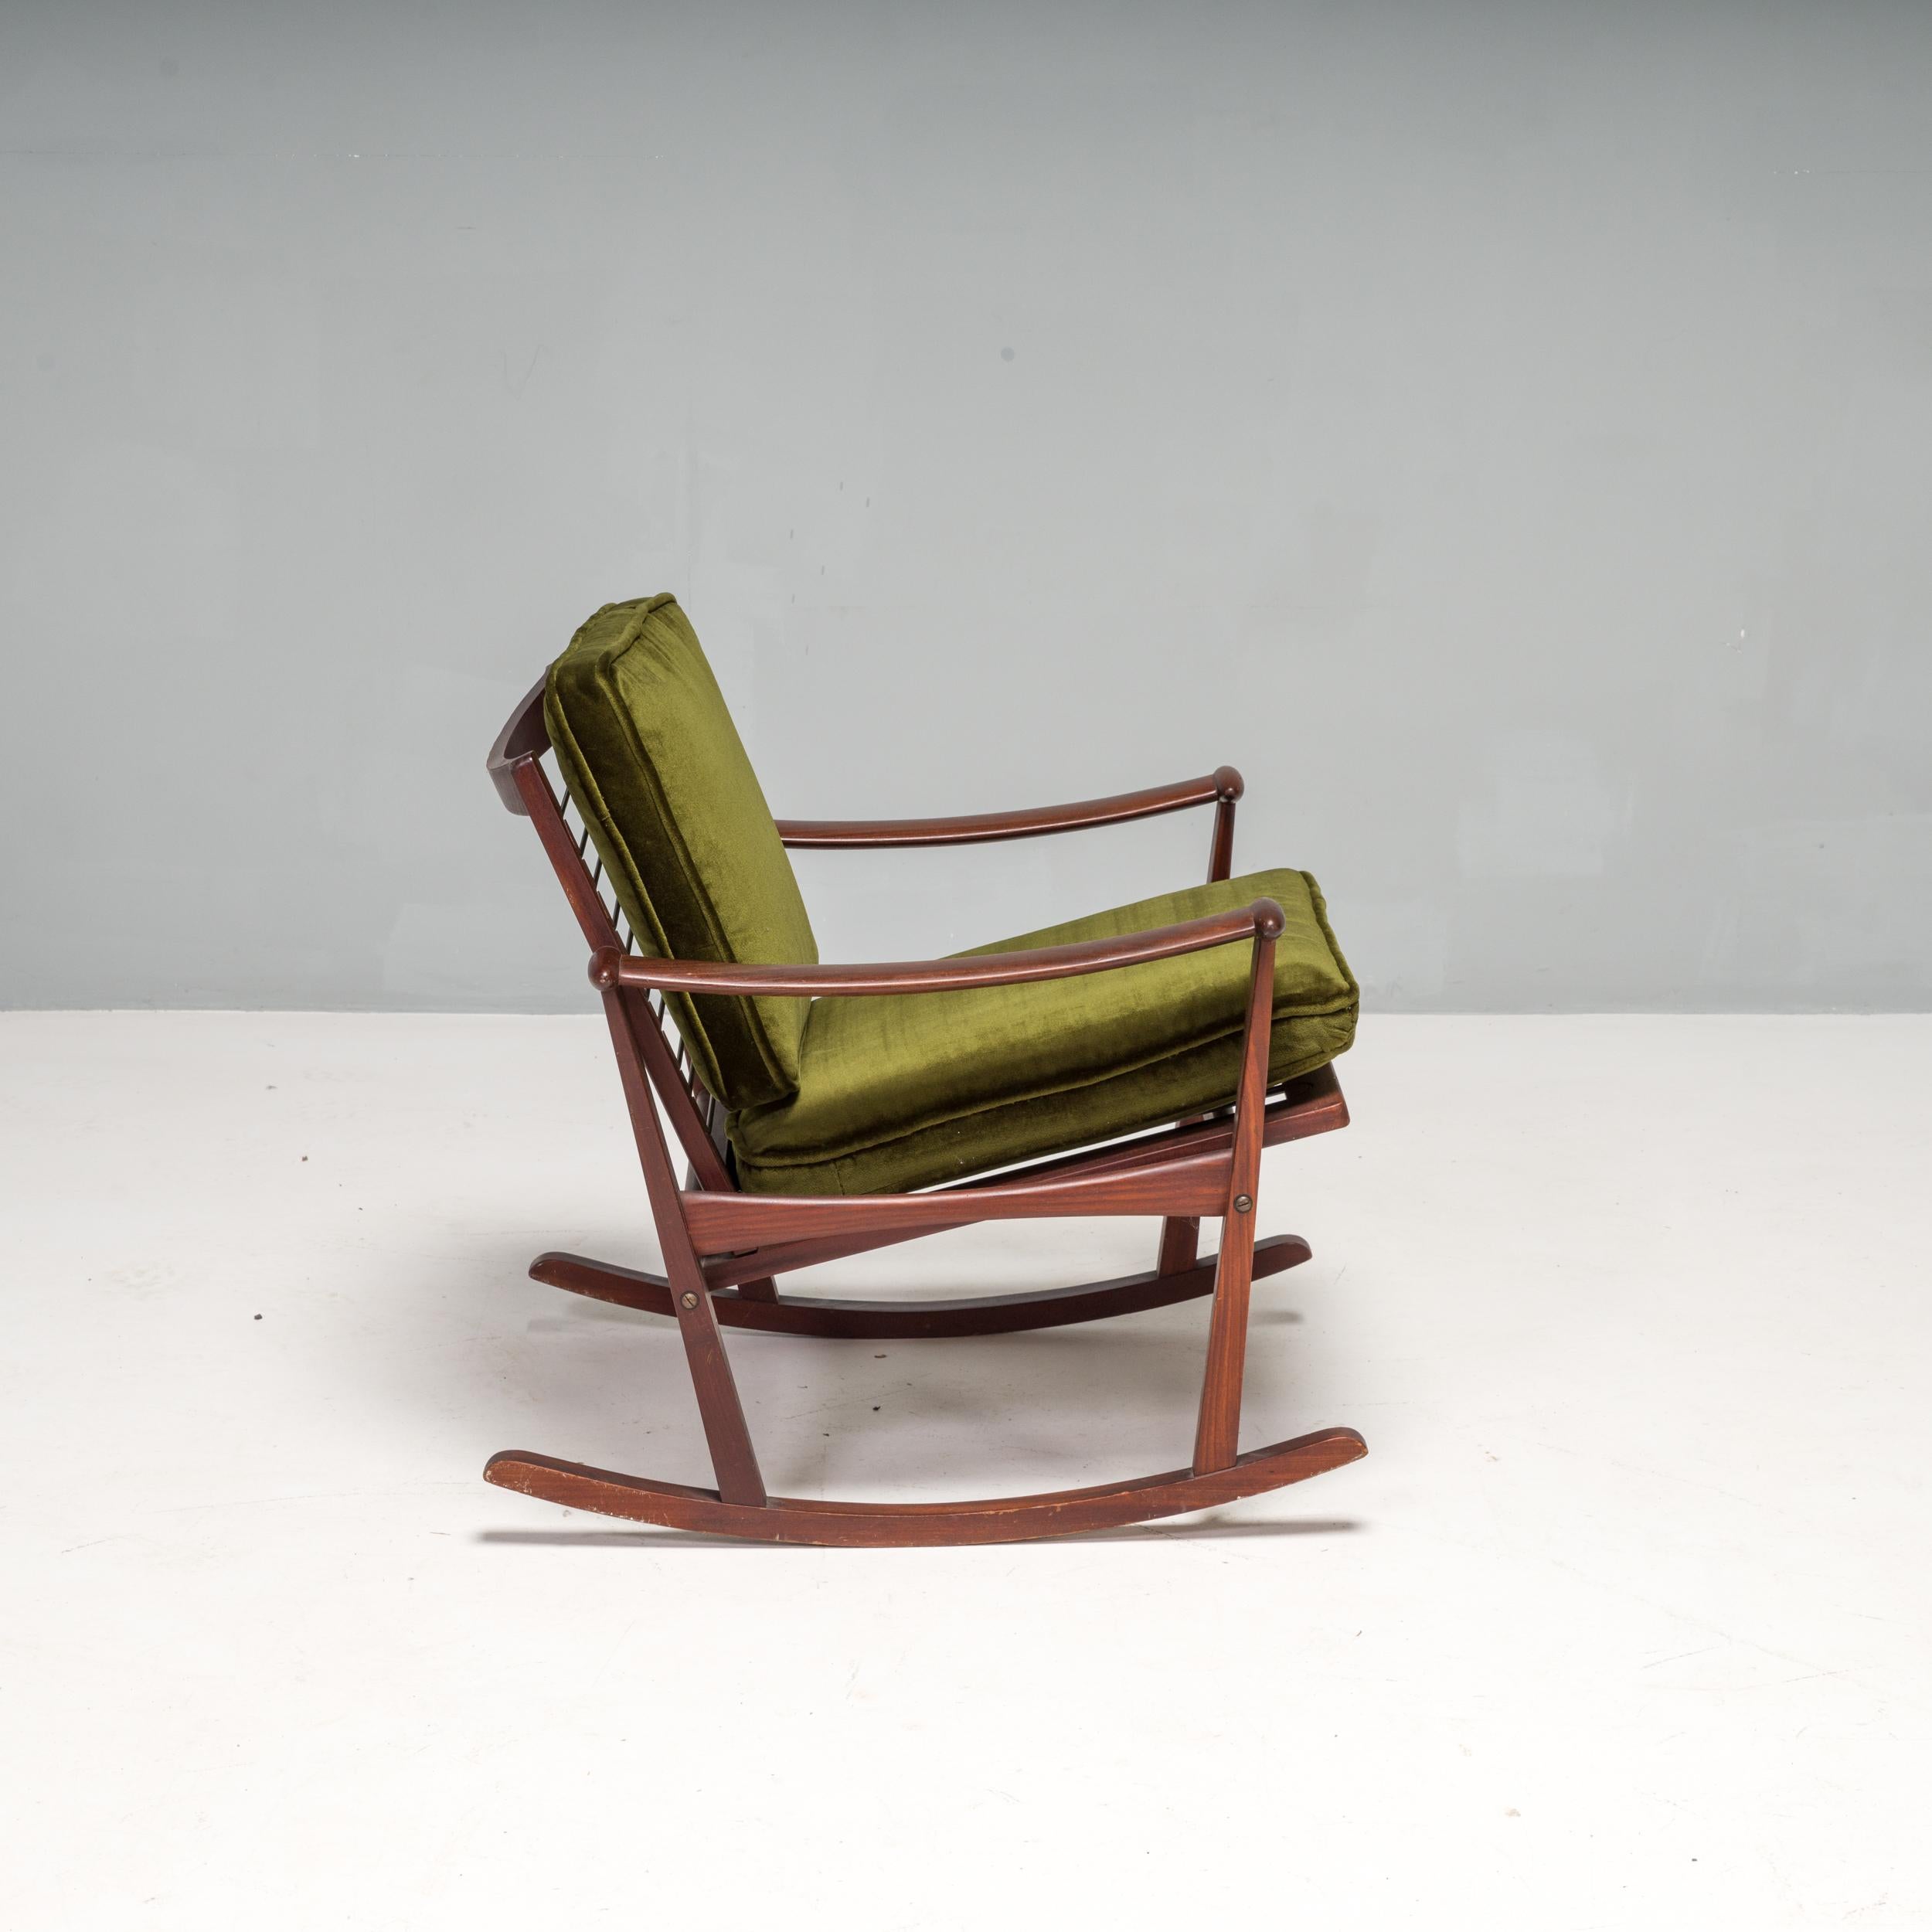 Schaukelstuhl / Sessel aus Holz, entworfen von M. Nissen und in den 1960er Jahren in den Niederlanden von dem niederländischen Hersteller Pastoe verkauft. 

Der Stuhl hat einen massiven Holzrahmen, geschwungene Armlehnen und ein geschwungenes